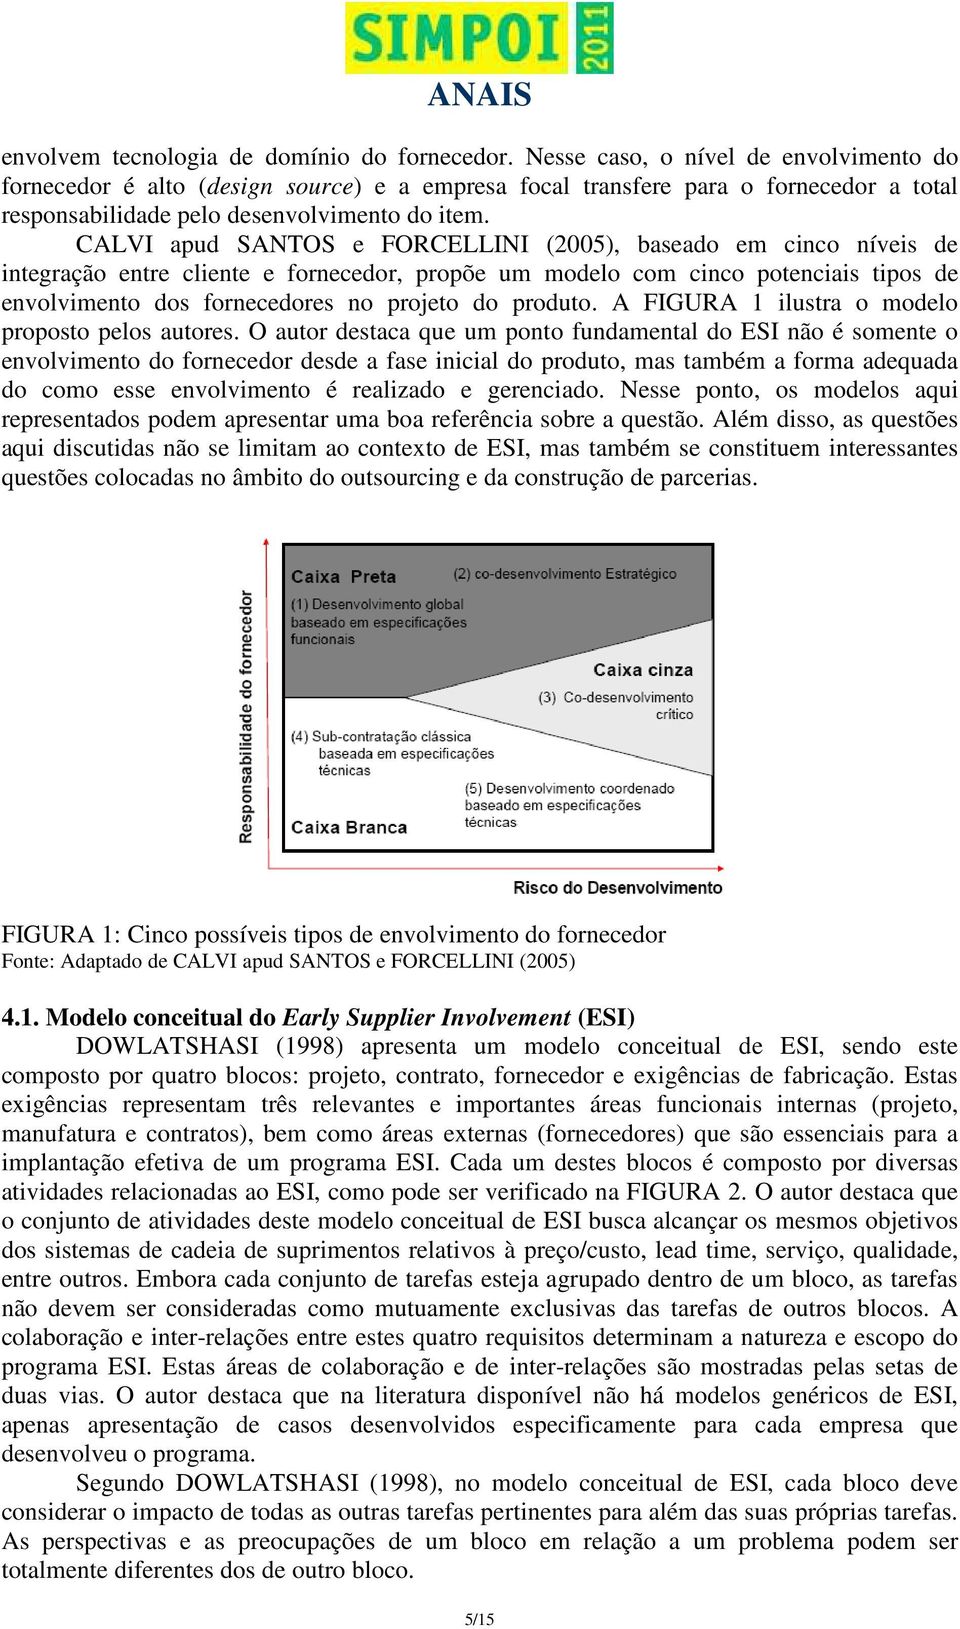 CALVI apud SANTOS e FORCELLINI (2005), baseado em cinco níveis de integração entre cliente e fornecedor, propõe um modelo com cinco potenciais tipos de envolvimento dos fornecedores no projeto do